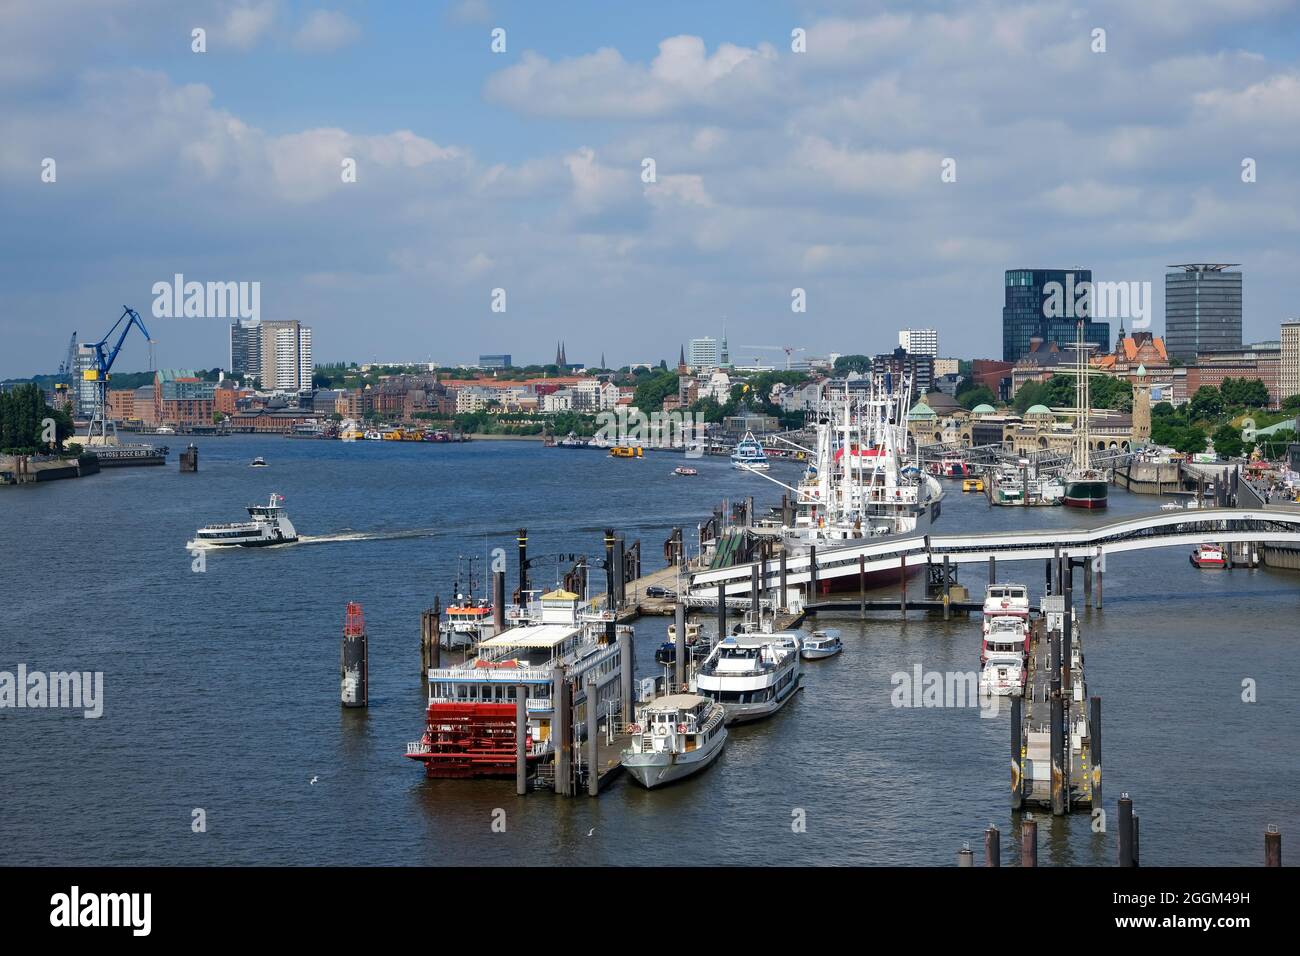 Hamburg, Deutschland - Blick auf den Hamburger Hafen, mit Elbpromenade, Überseebrücke, Elbe, Innenstadt, St. Pauli, Altona, Landungsbrücken, Museumsschiffe, Hafenfähren. Stockfoto